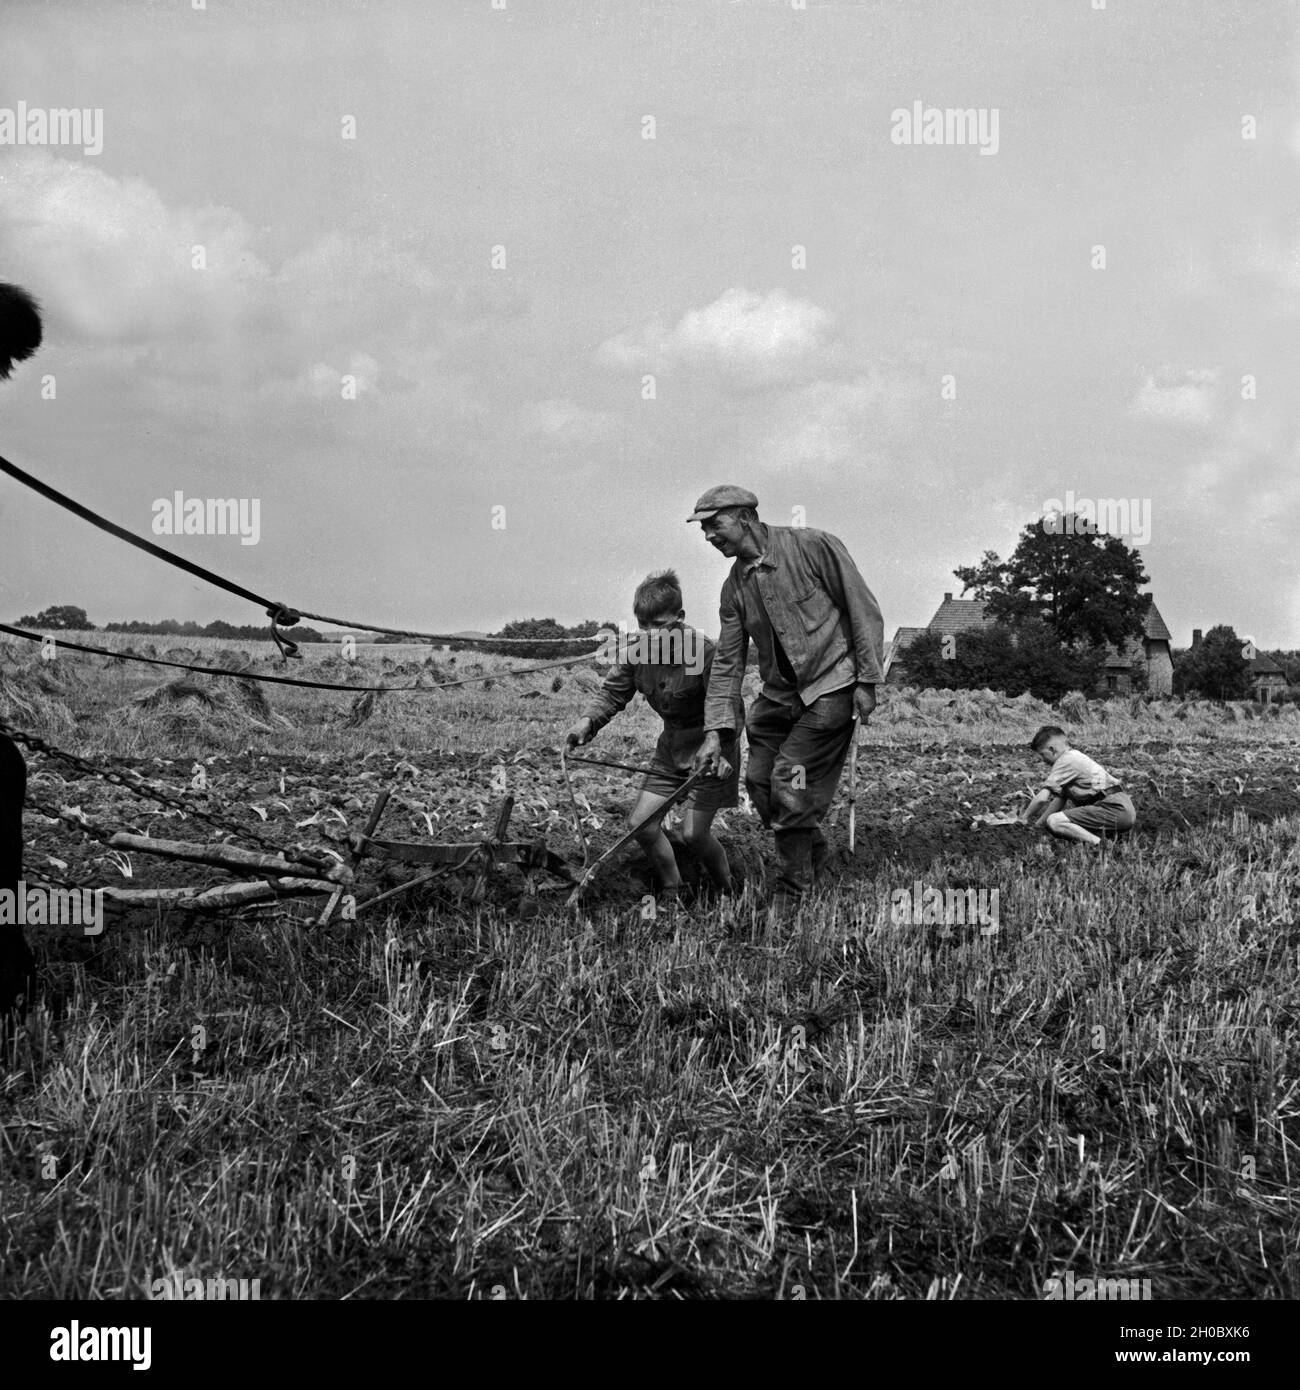 Hitlerjugend als Landhelfer bei einem Bauern in Bevensen in der Lüneburger Heide, Deutschland 1930er Jahre. Hitler youth as support for a farmer at Bevensen, Germany 1930s. Stock Photo